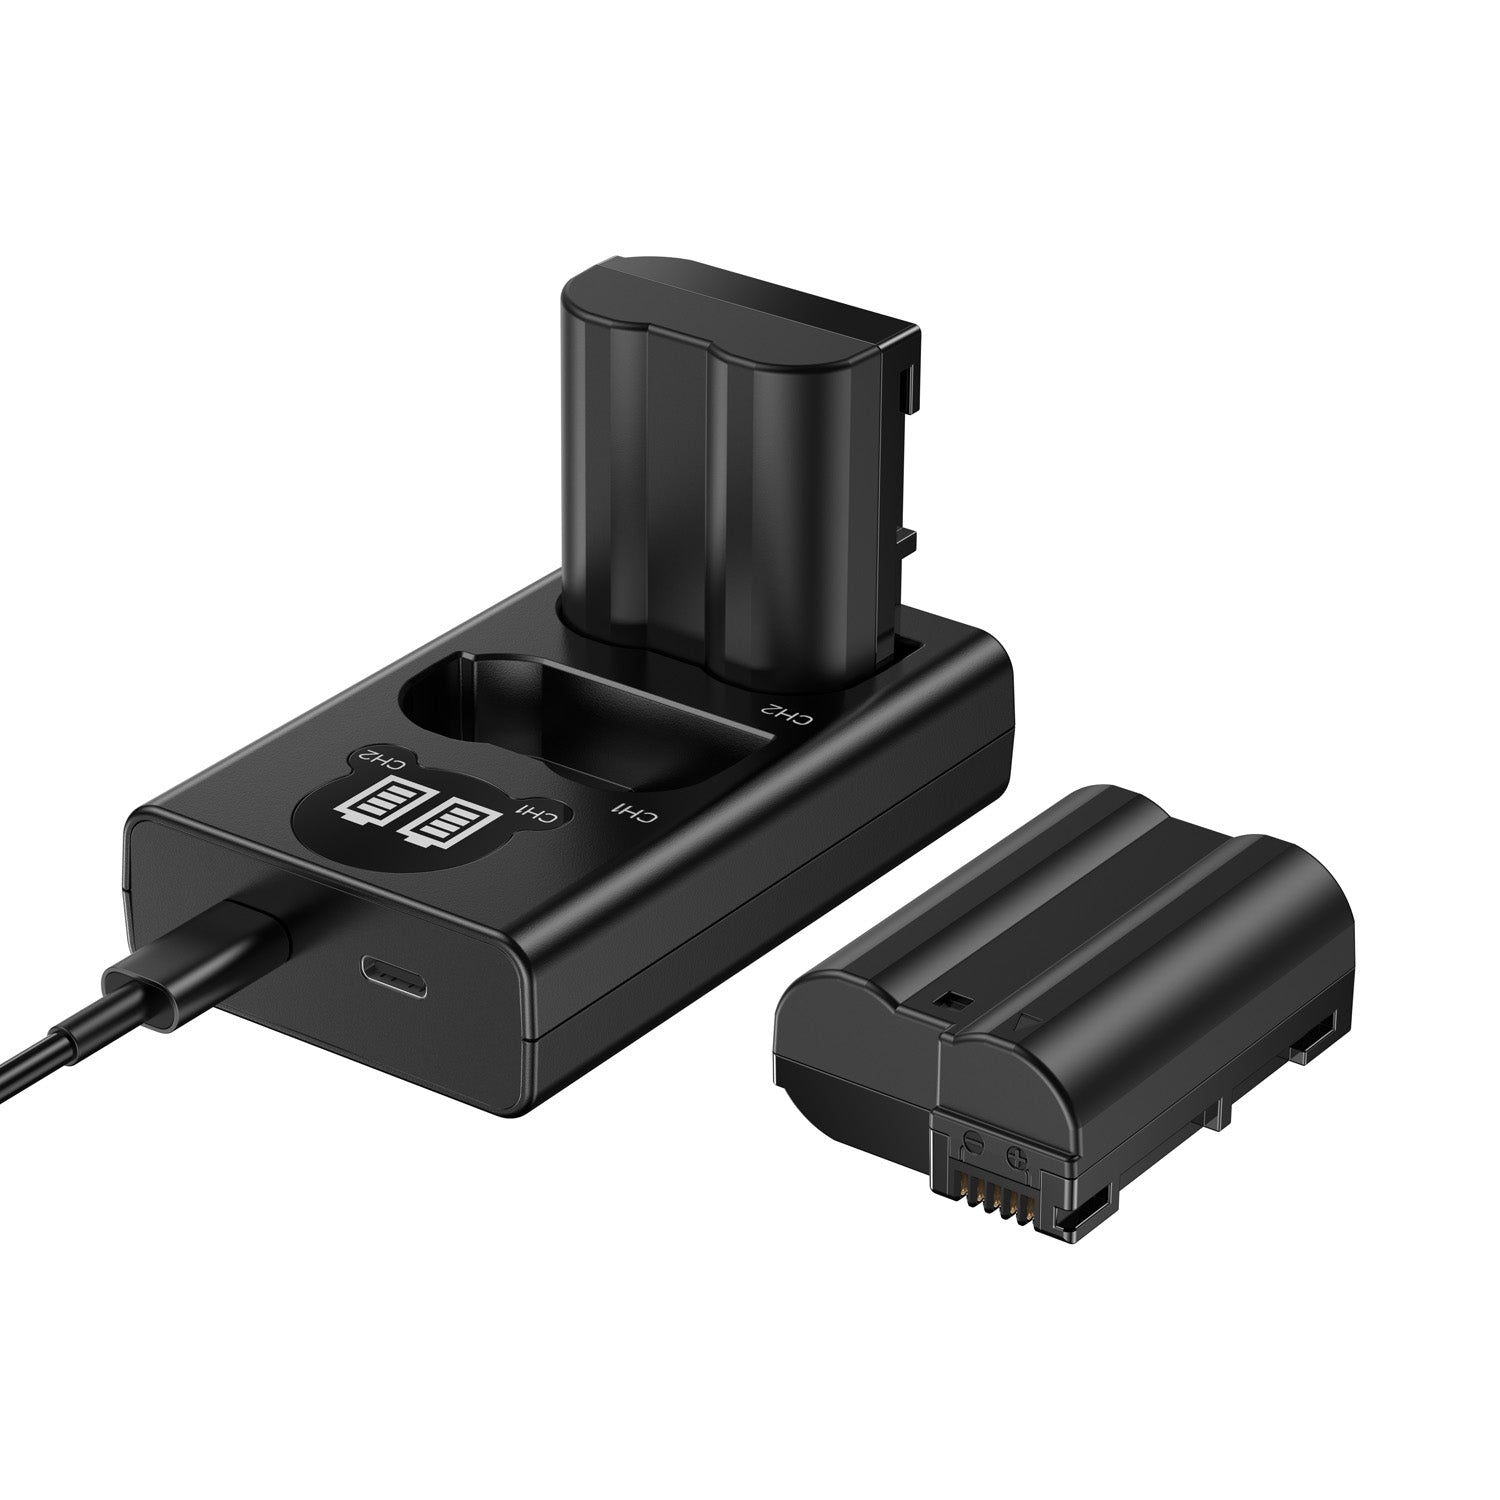 EN-EL15 /EL15a/EL15b/EL15c Replacement Battery (2 Pack) and Smart LED Dual Charger Kit ENEGON